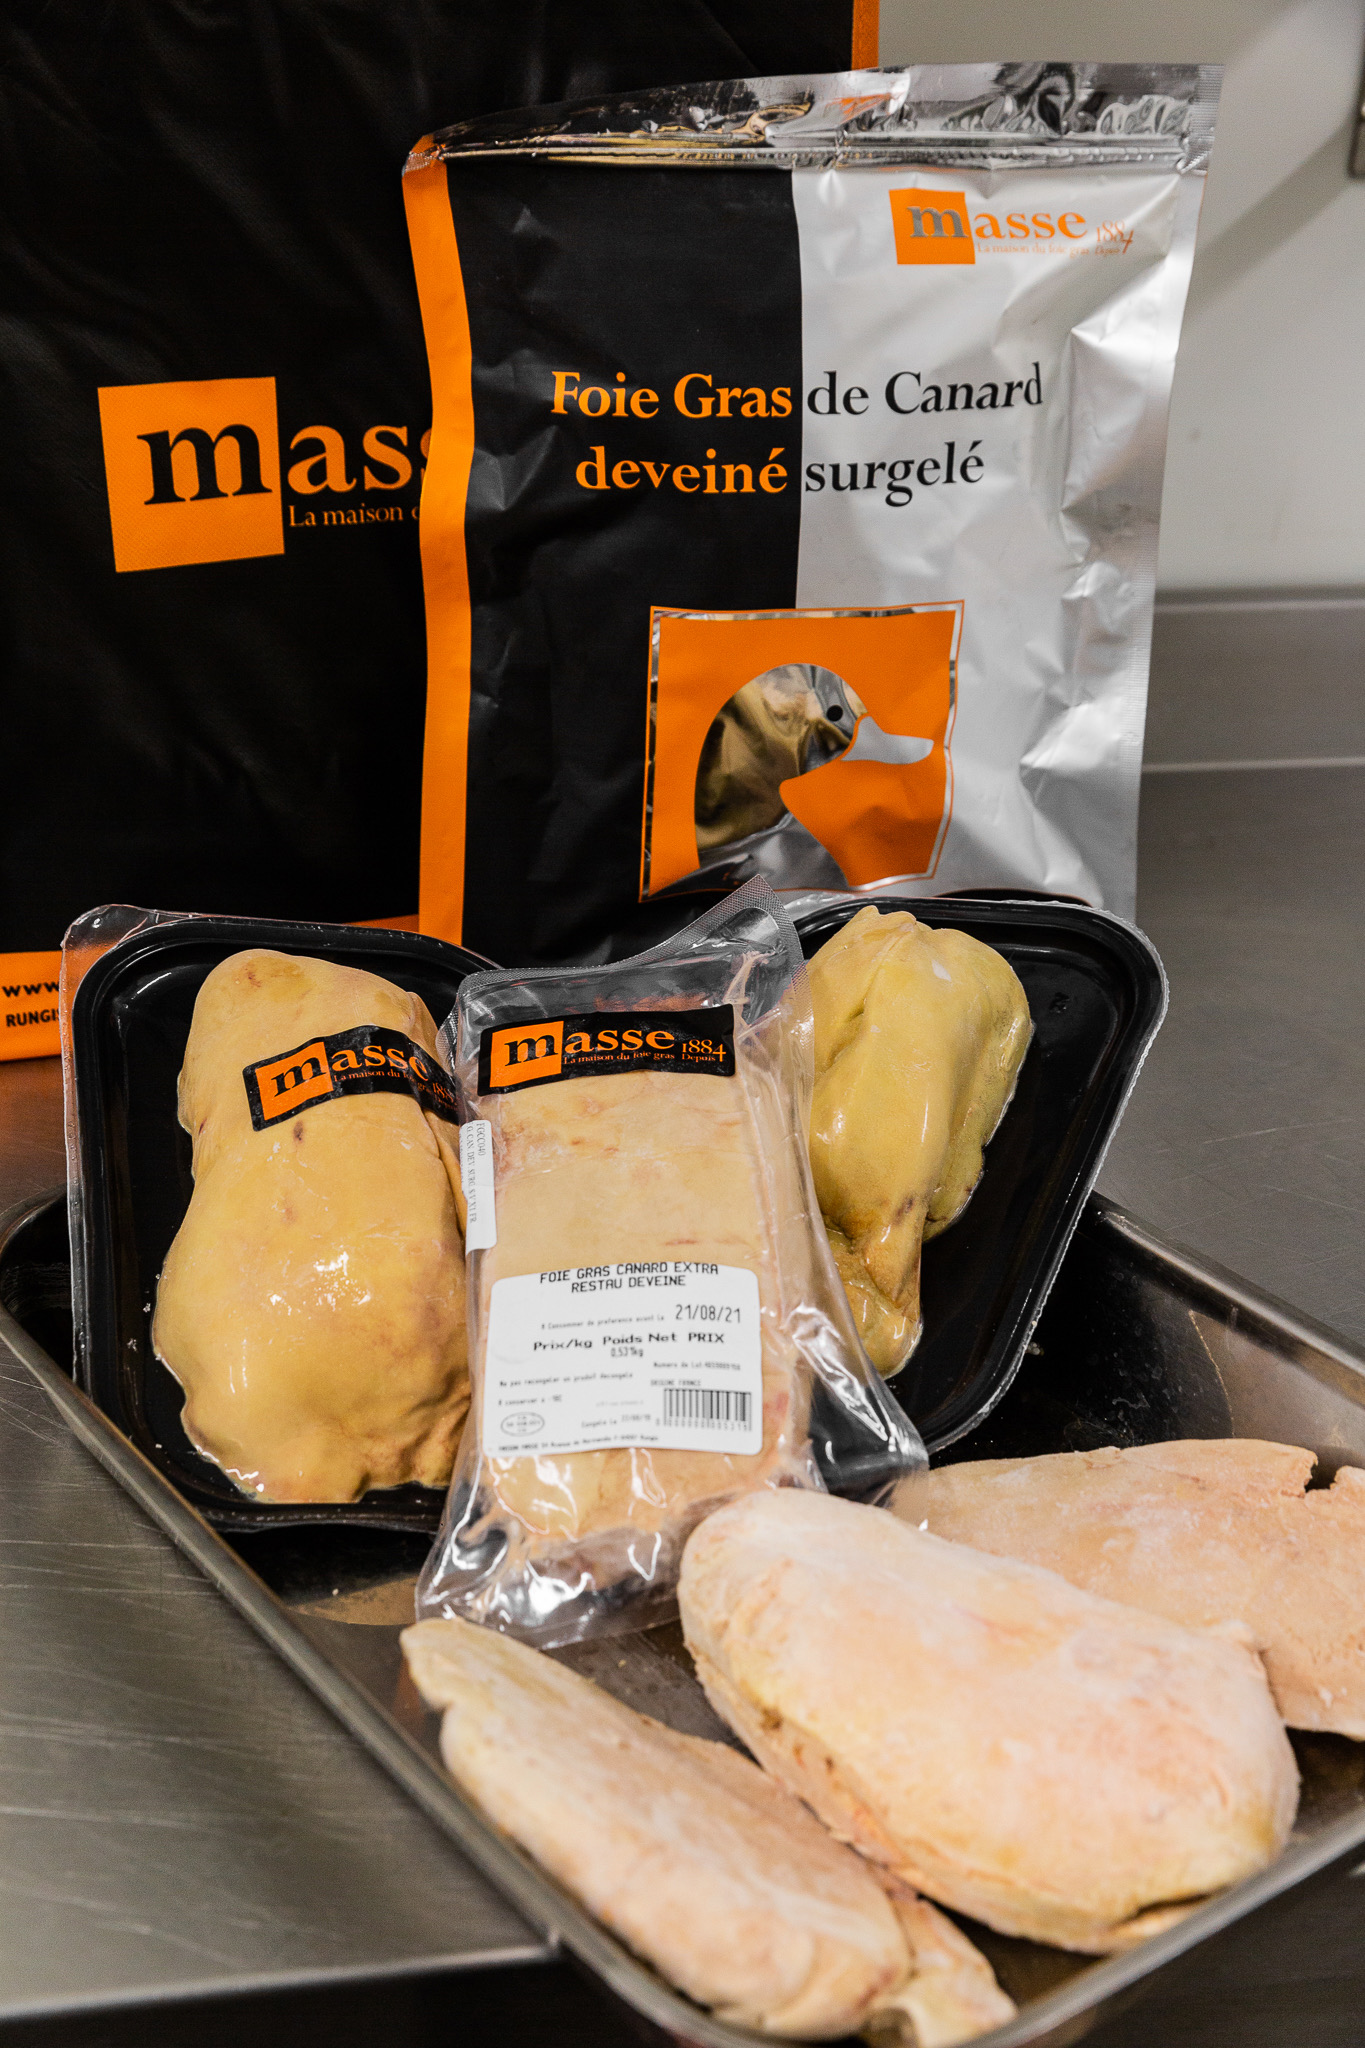 Maison Masse: The Art of Foie Gras